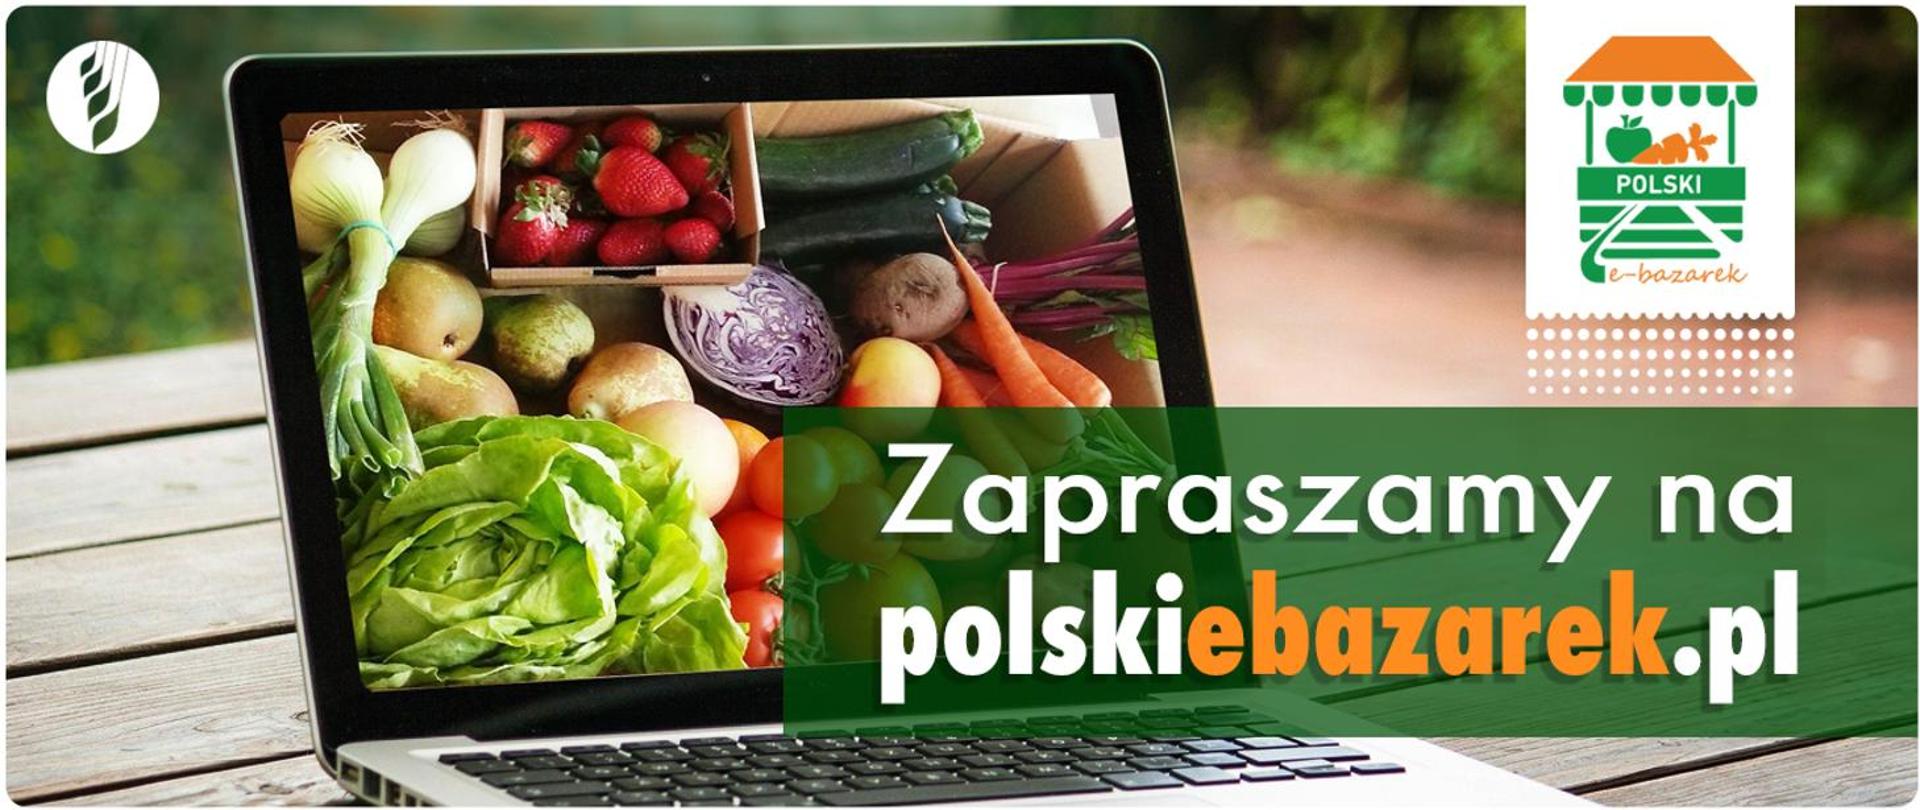 Napis "Zapraszamy na polskiebazarek.pl" oraz w tle laptop ze zdjęciem warzyw